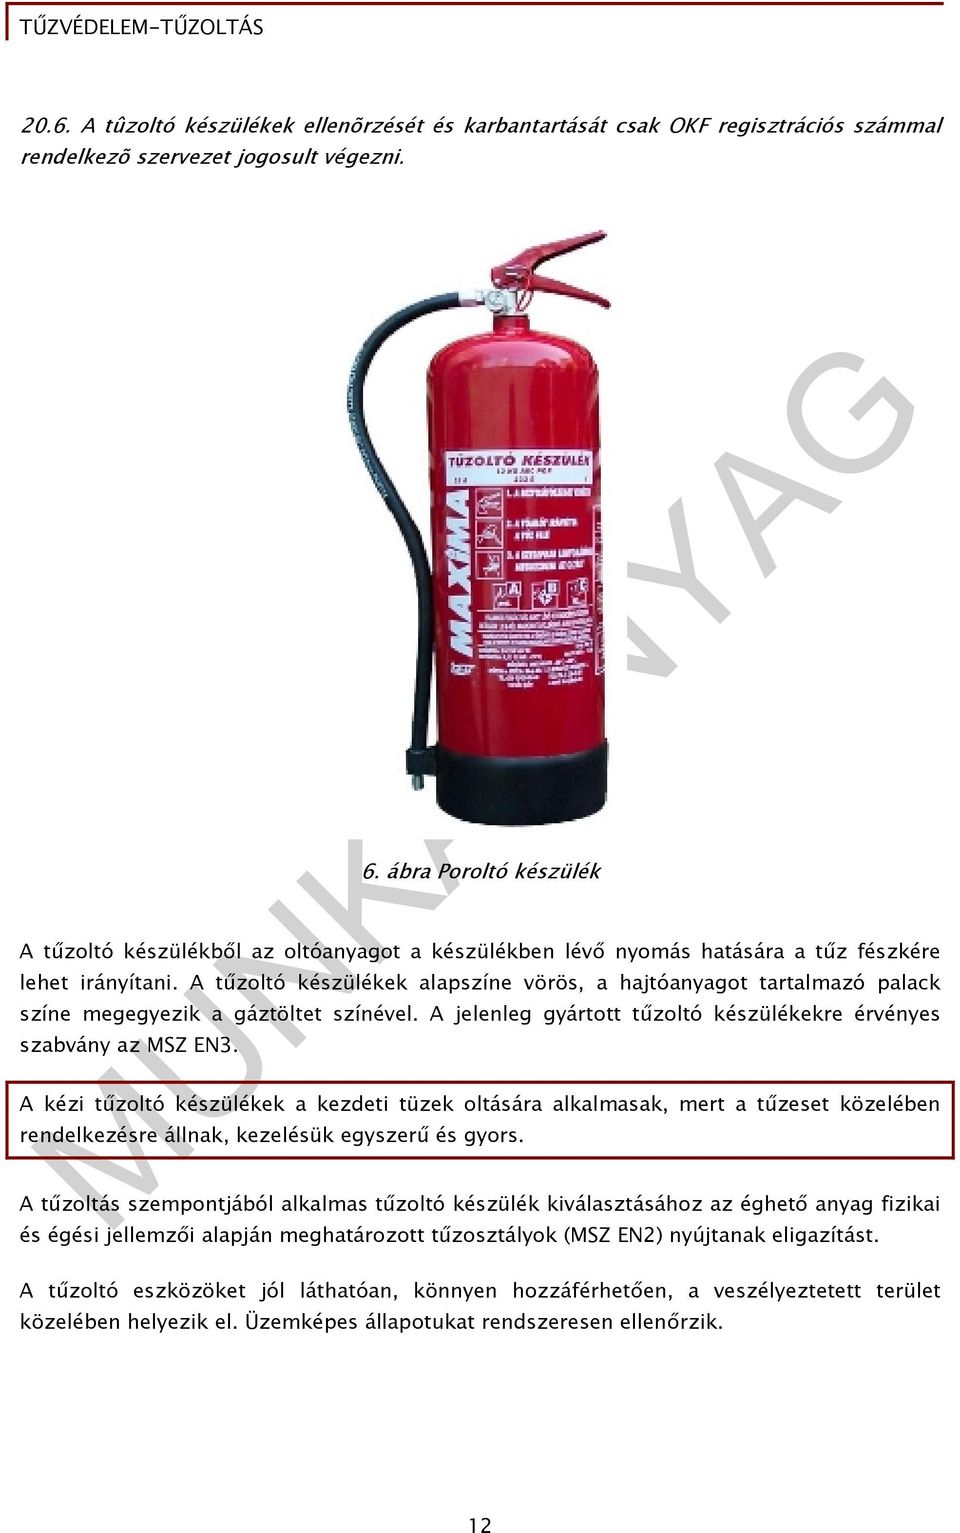 A tűzoltó készülékek alapszíne vörös, a hajtóanyagot tartalmazó palack színe megegyezik a gáztöltet színével. A jelenleg gyártott tűzoltó készülékekre érvényes szabvány az MSZ EN3.